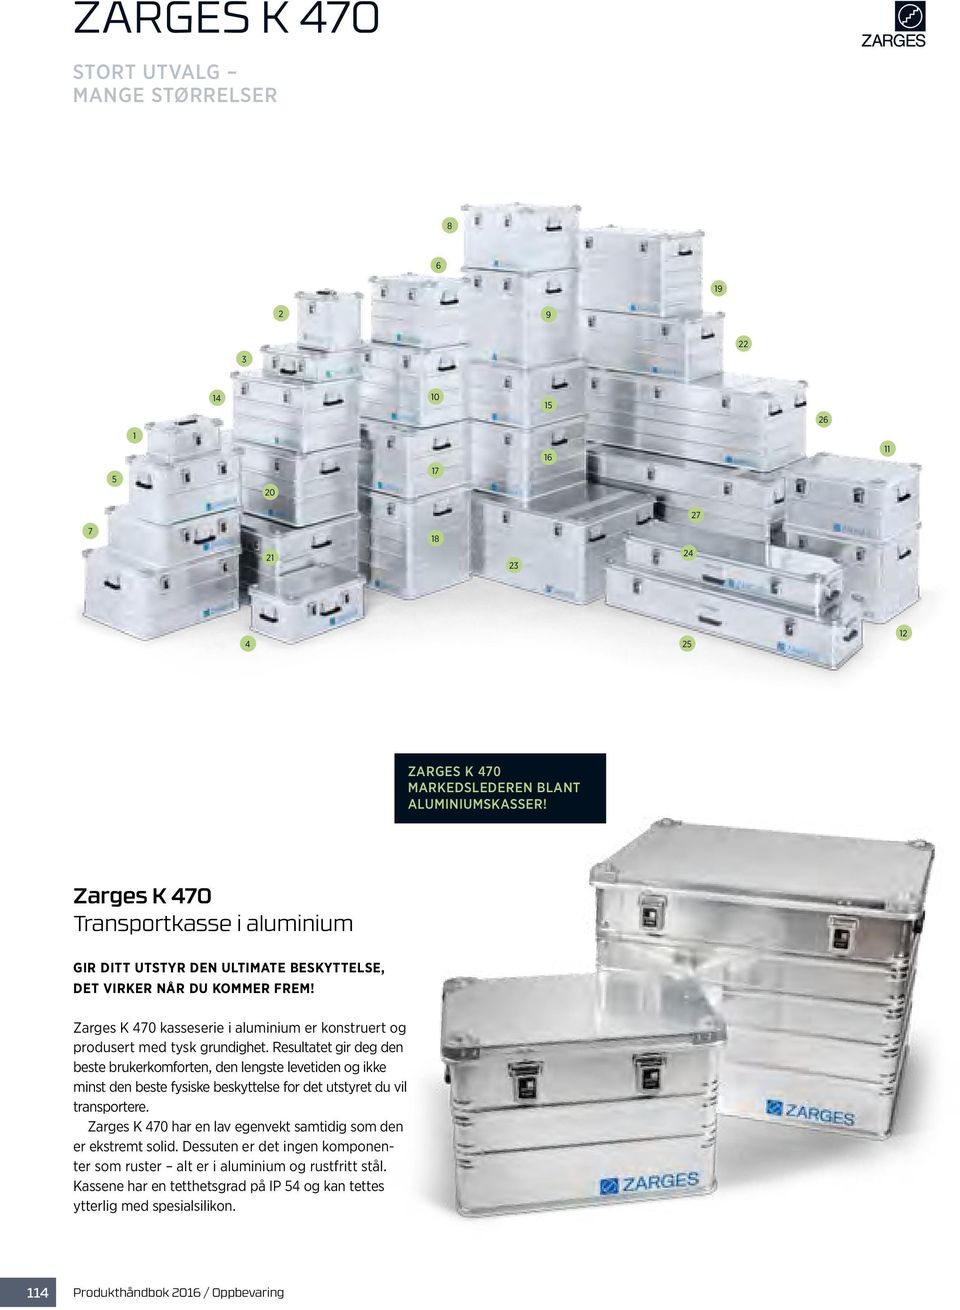 Zarges K 470 kasseserie i aluminium er konstruert og produsert med tysk grundighet.